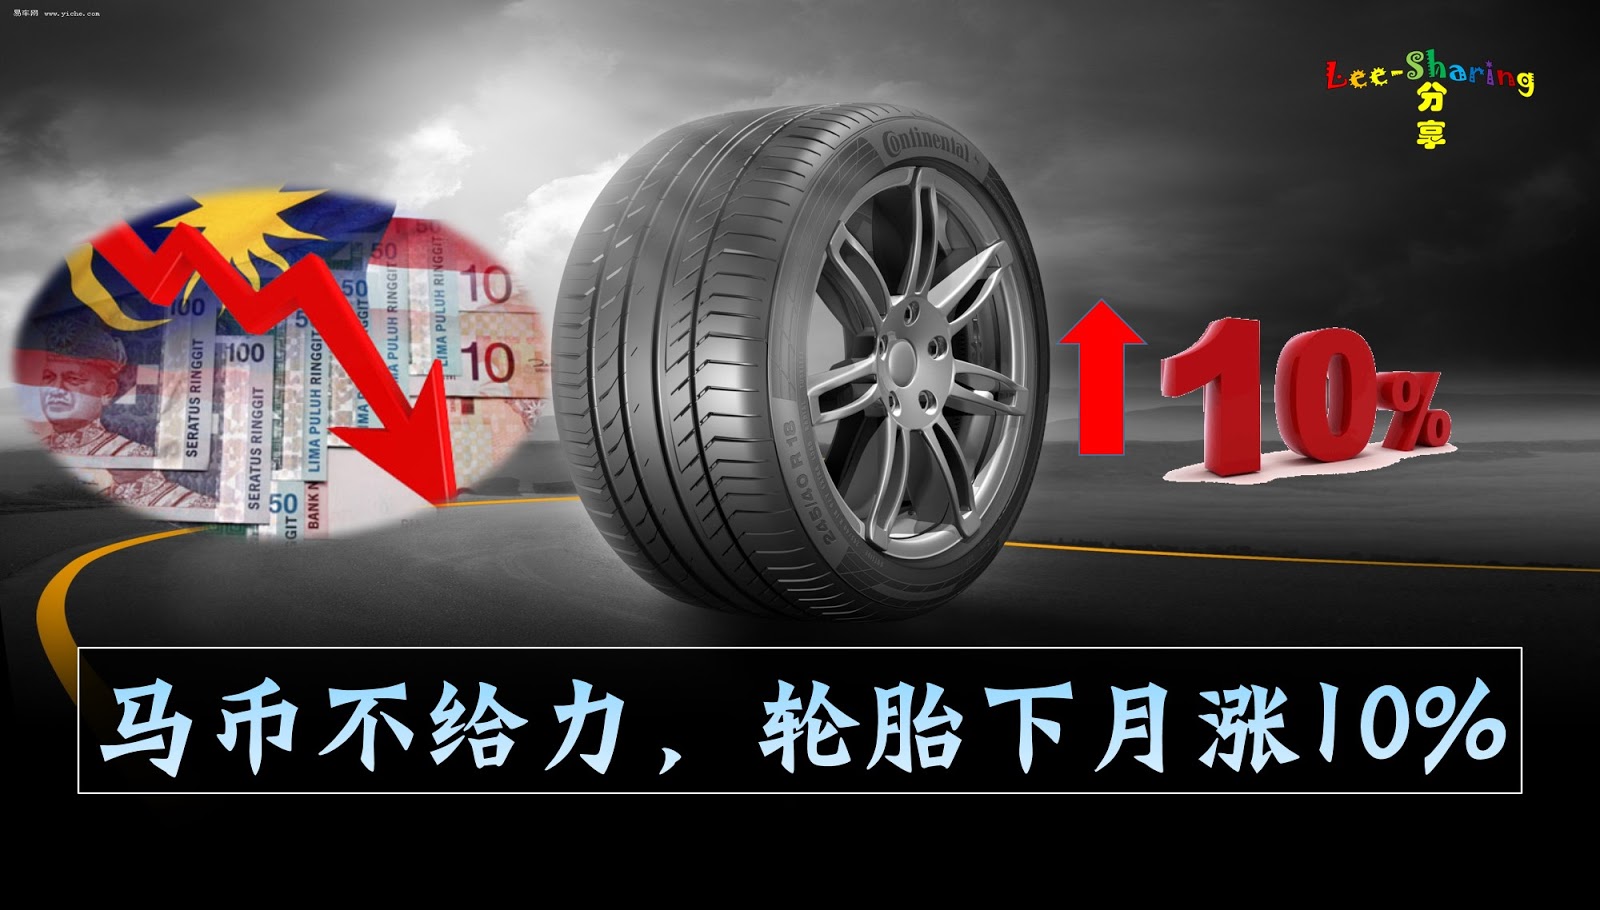 轮胎海报合成创意广告图教程设计_王某人 设计作品--致设计